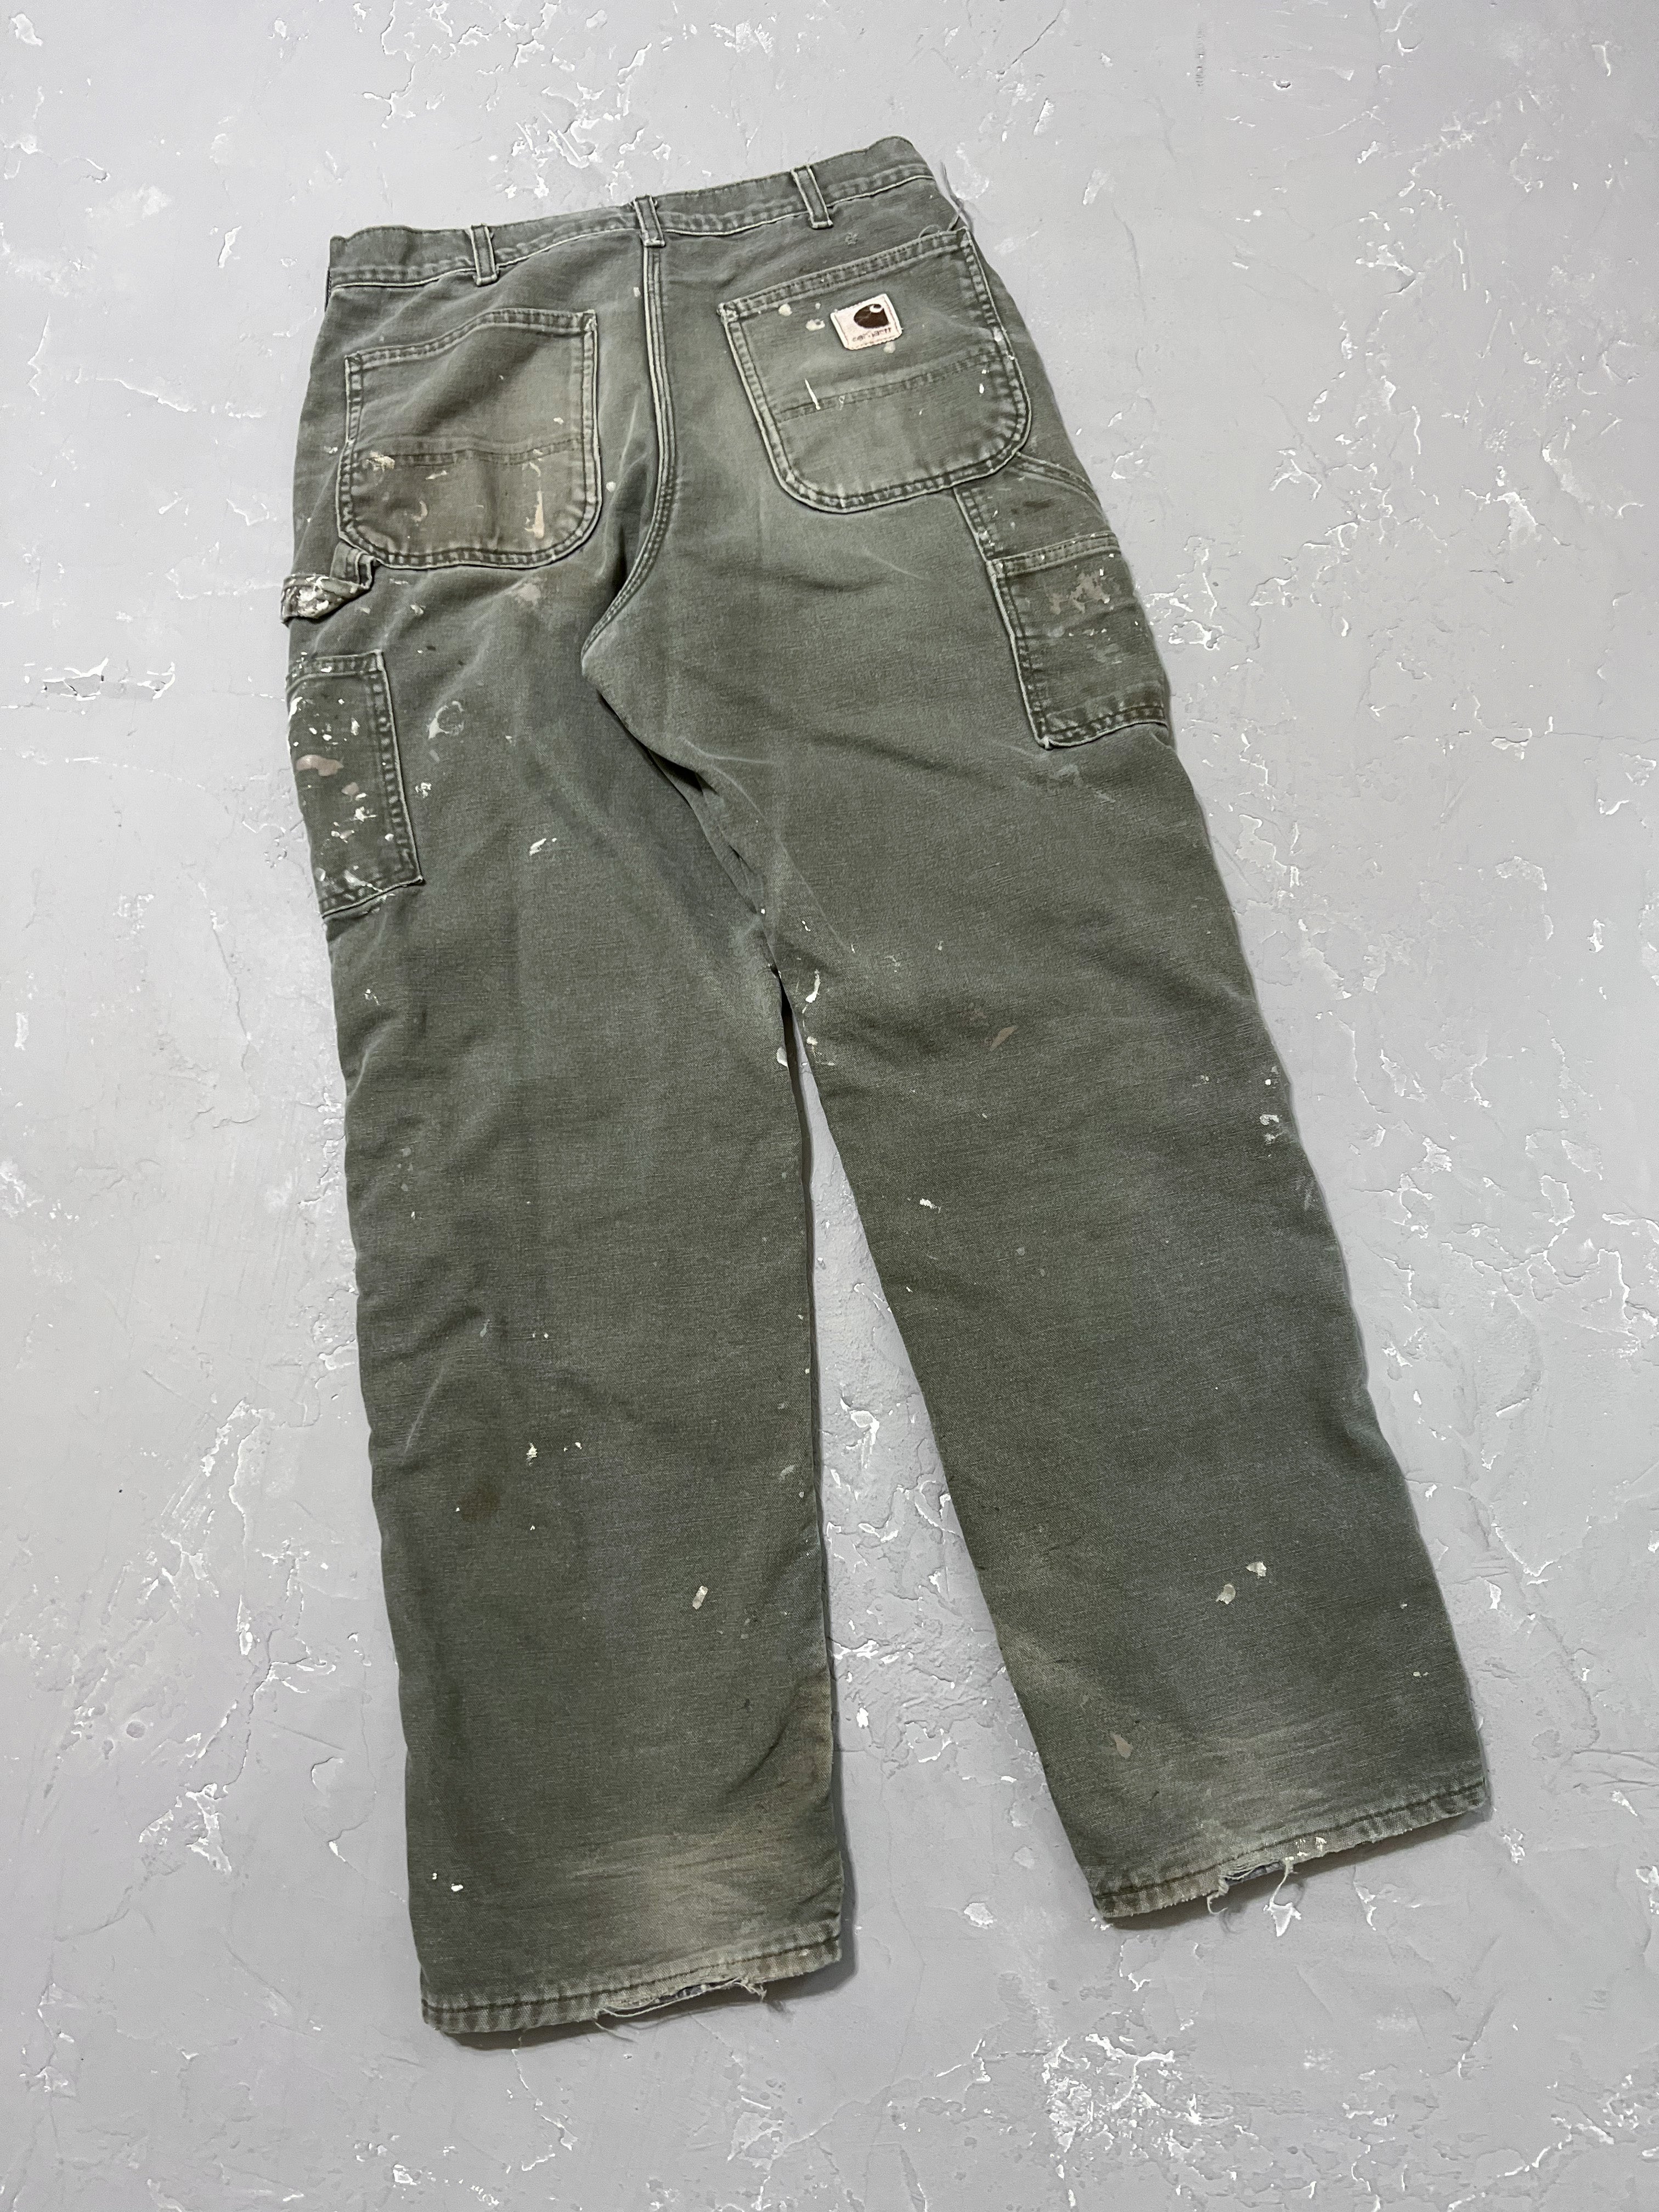 Carhartt Moss Green Painted Carpenter Pants [31 x 32]